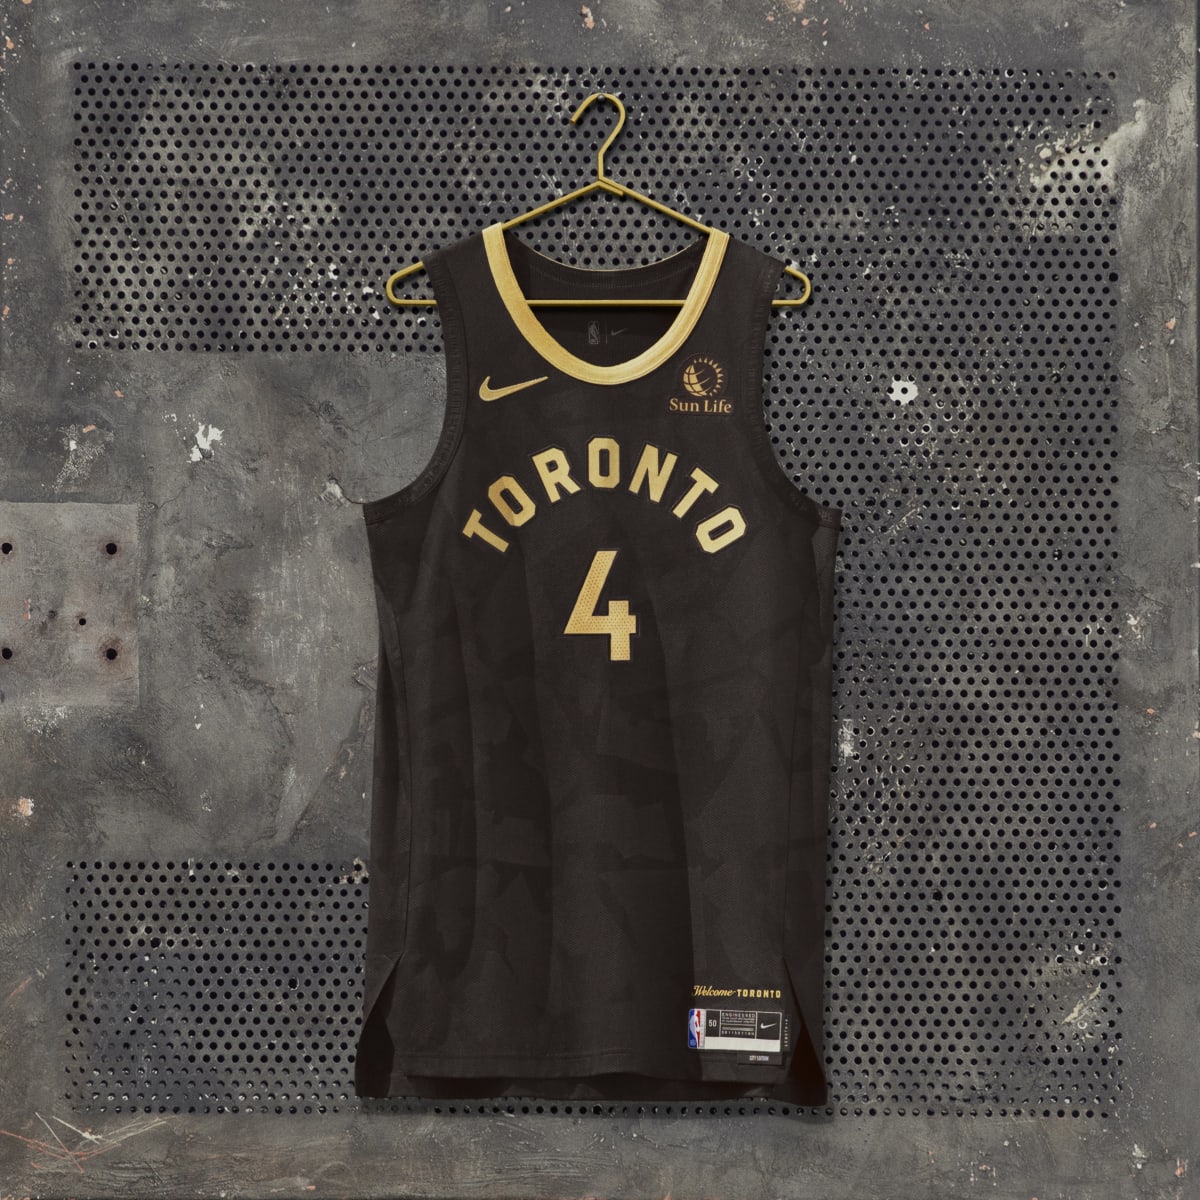 NBA Buzz - The new Toronto Raptors' jersey design has been